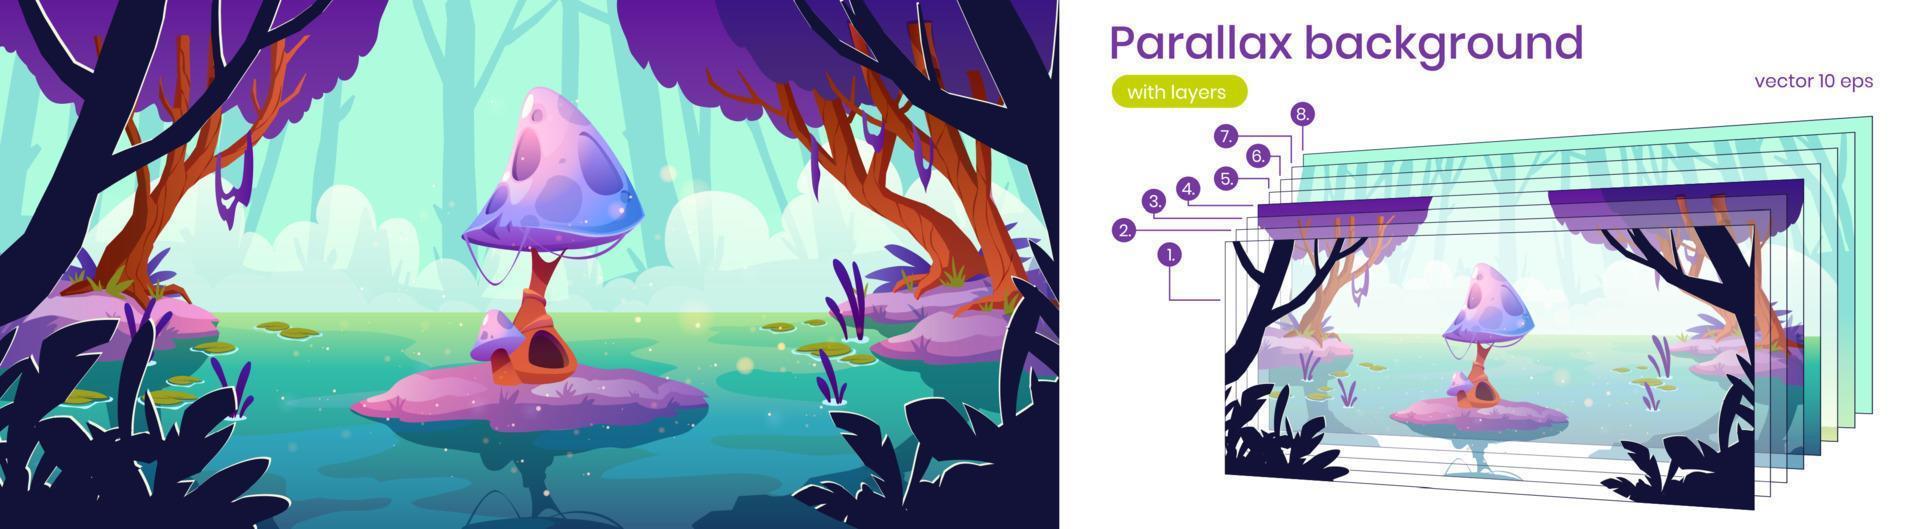 Parallax background fantasy 2d mushroom landscape vector